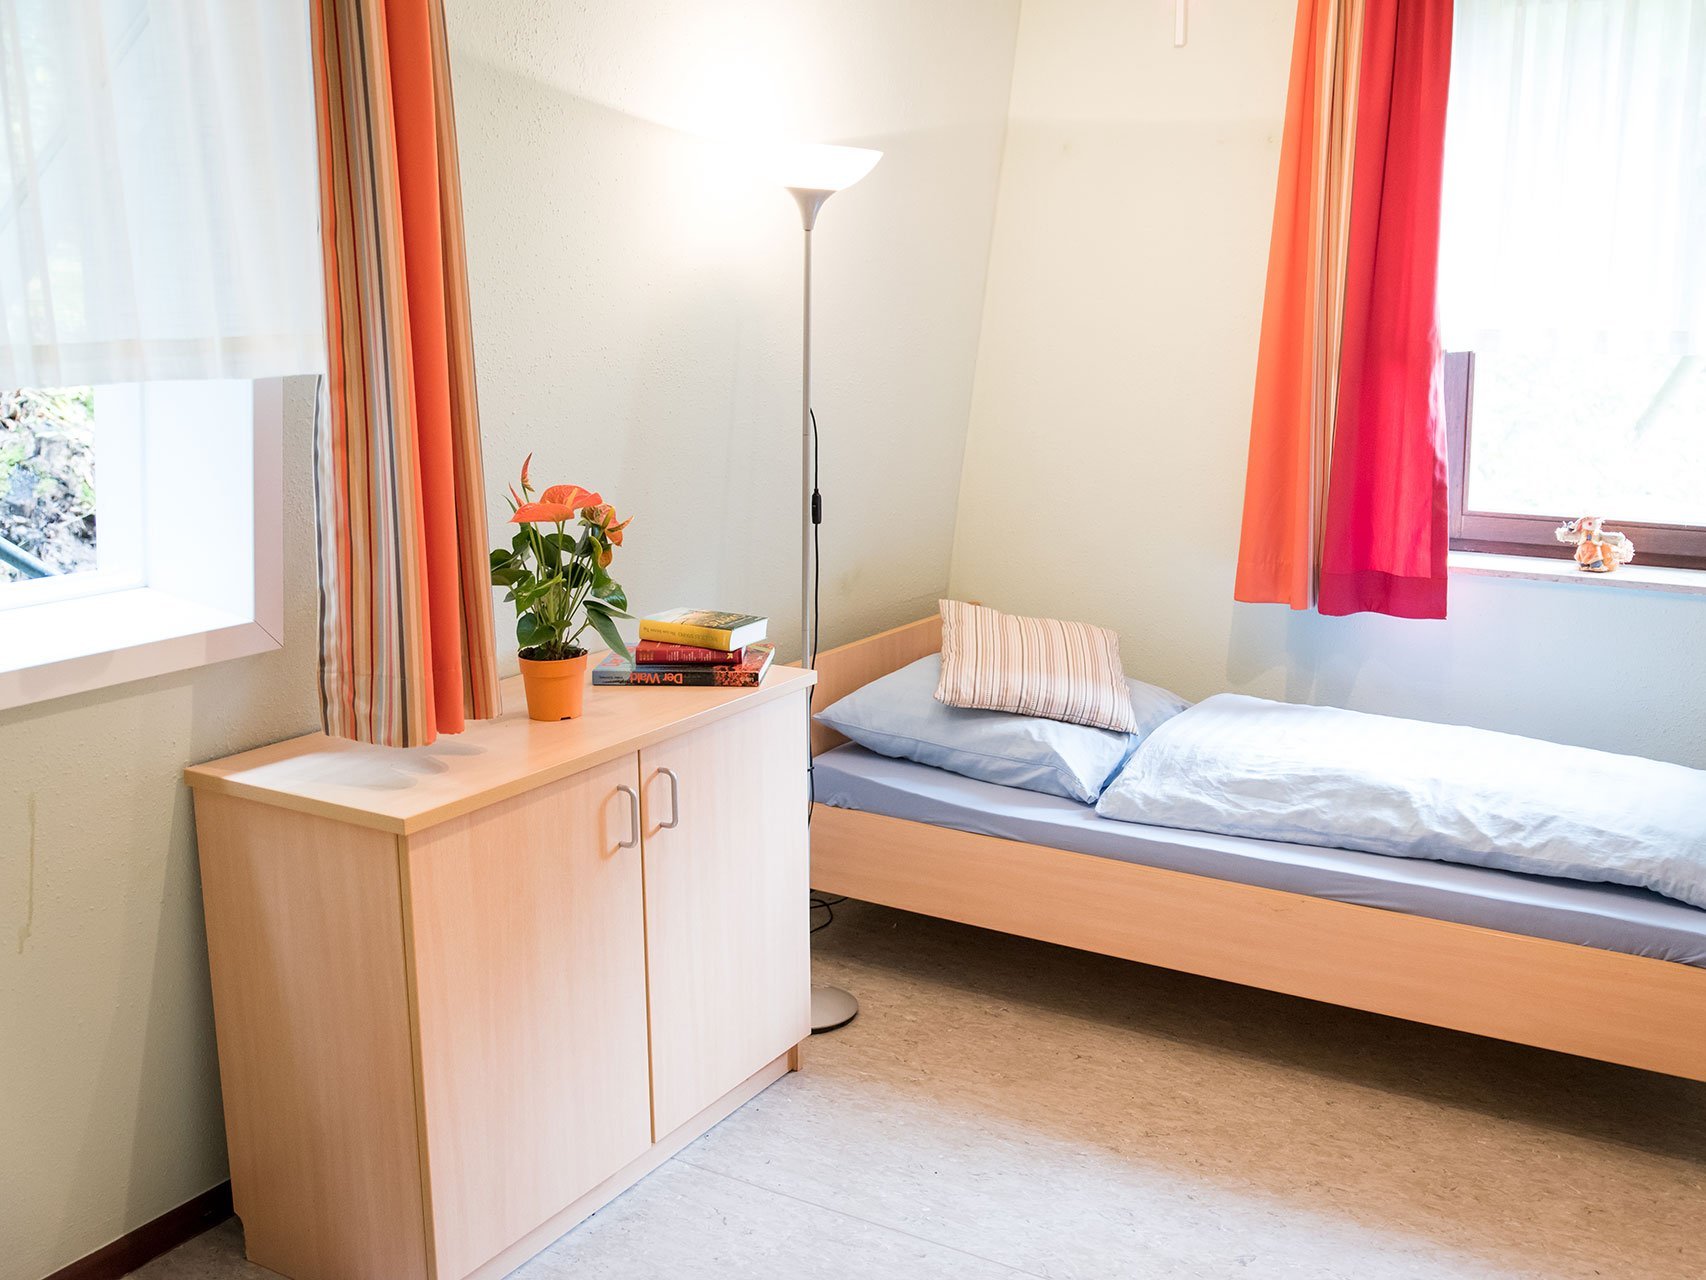 Bewohnerzimmer mit Bett und Schrank - hauptsächlich in orange gehalten und sehr hell